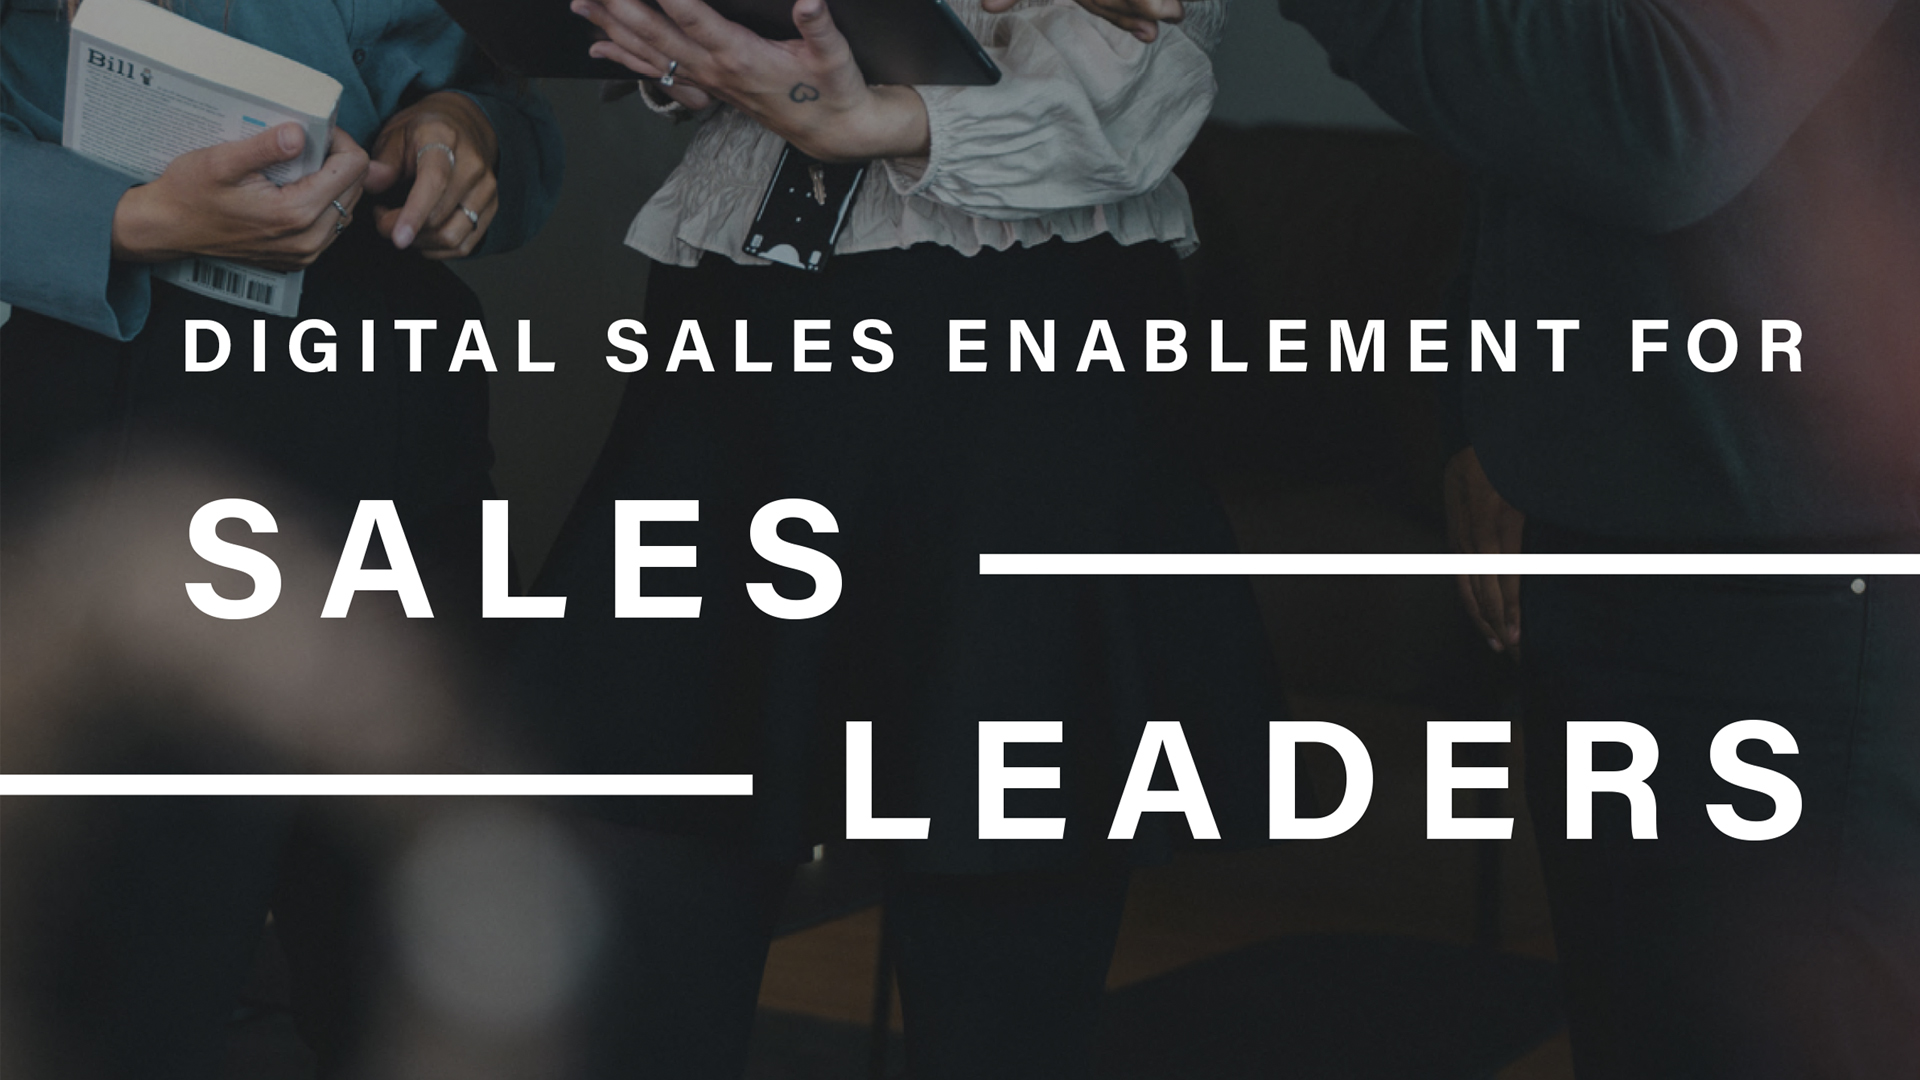 Digital sales enablement for sales leaders